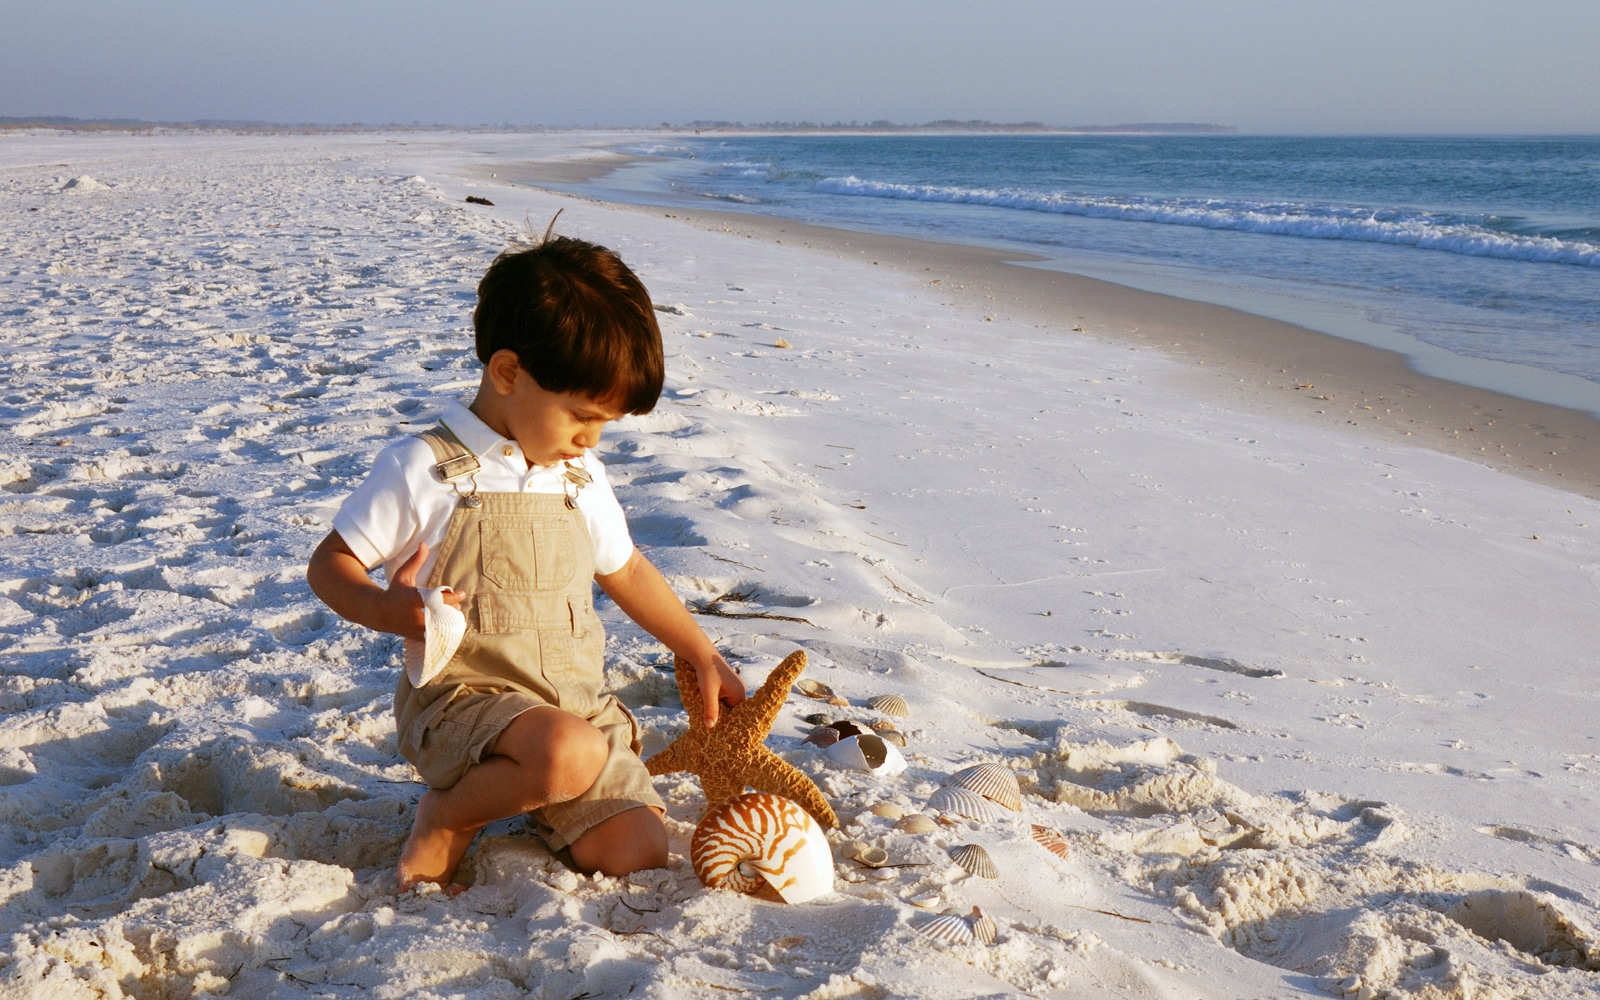 Child explores the beach